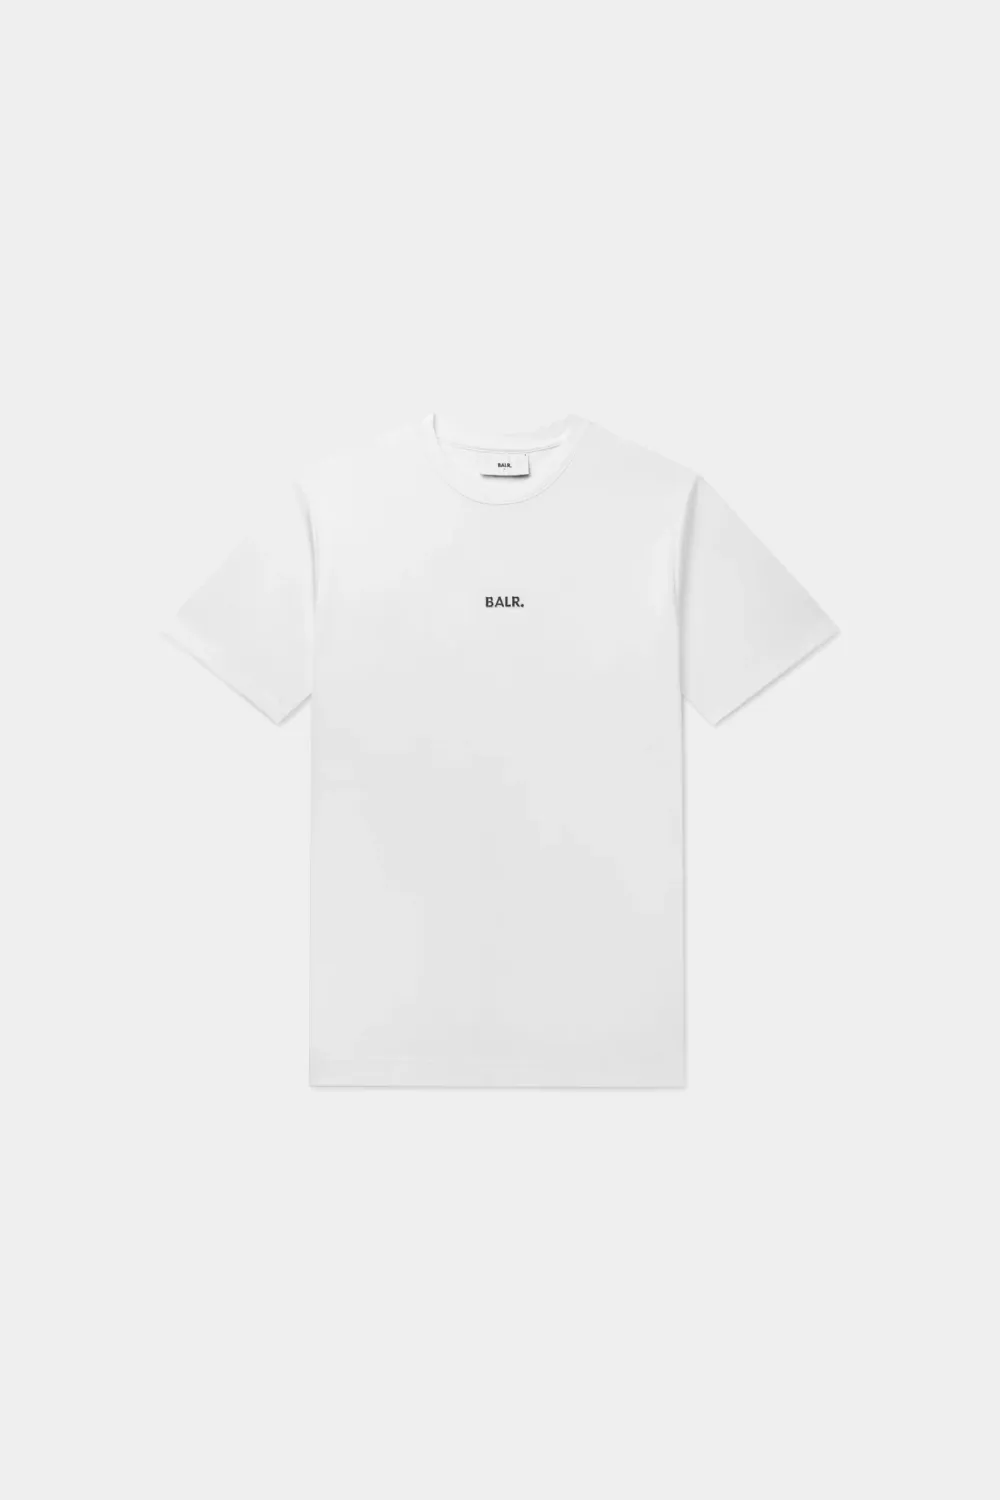 BALR. Q-Series Regular T-Shirt